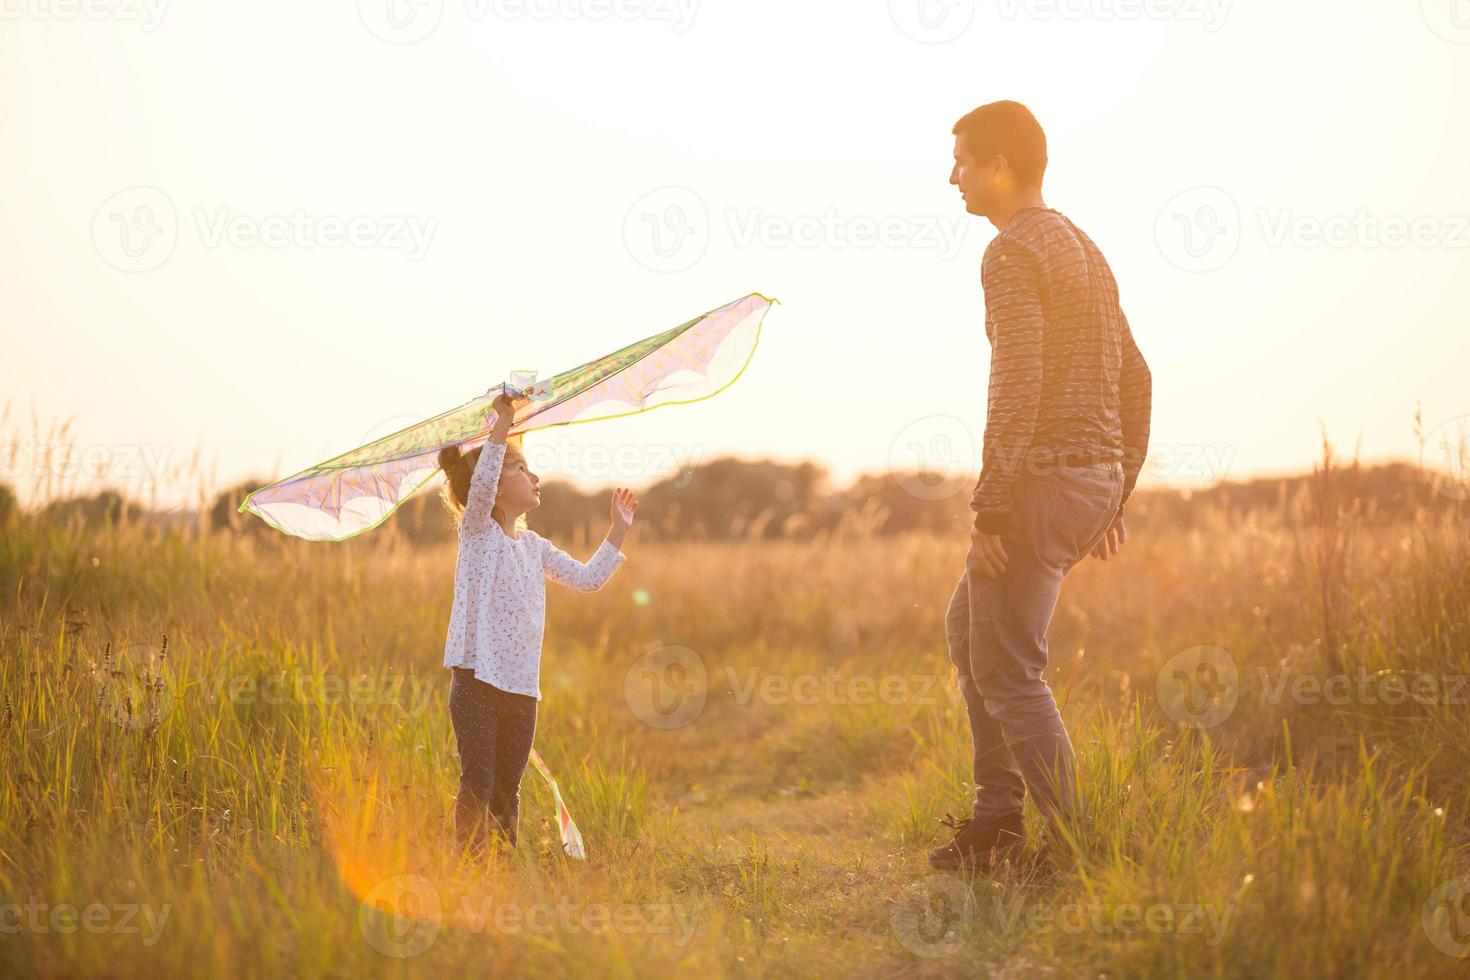 papá ayuda a su hija a volar una cometa en un campo en verano al atardecer. entretenimiento familiar al aire libre, dia del padre, dia del niño. zonas rurales, apoyo, asistencia mutua. luz naranja del sol foto